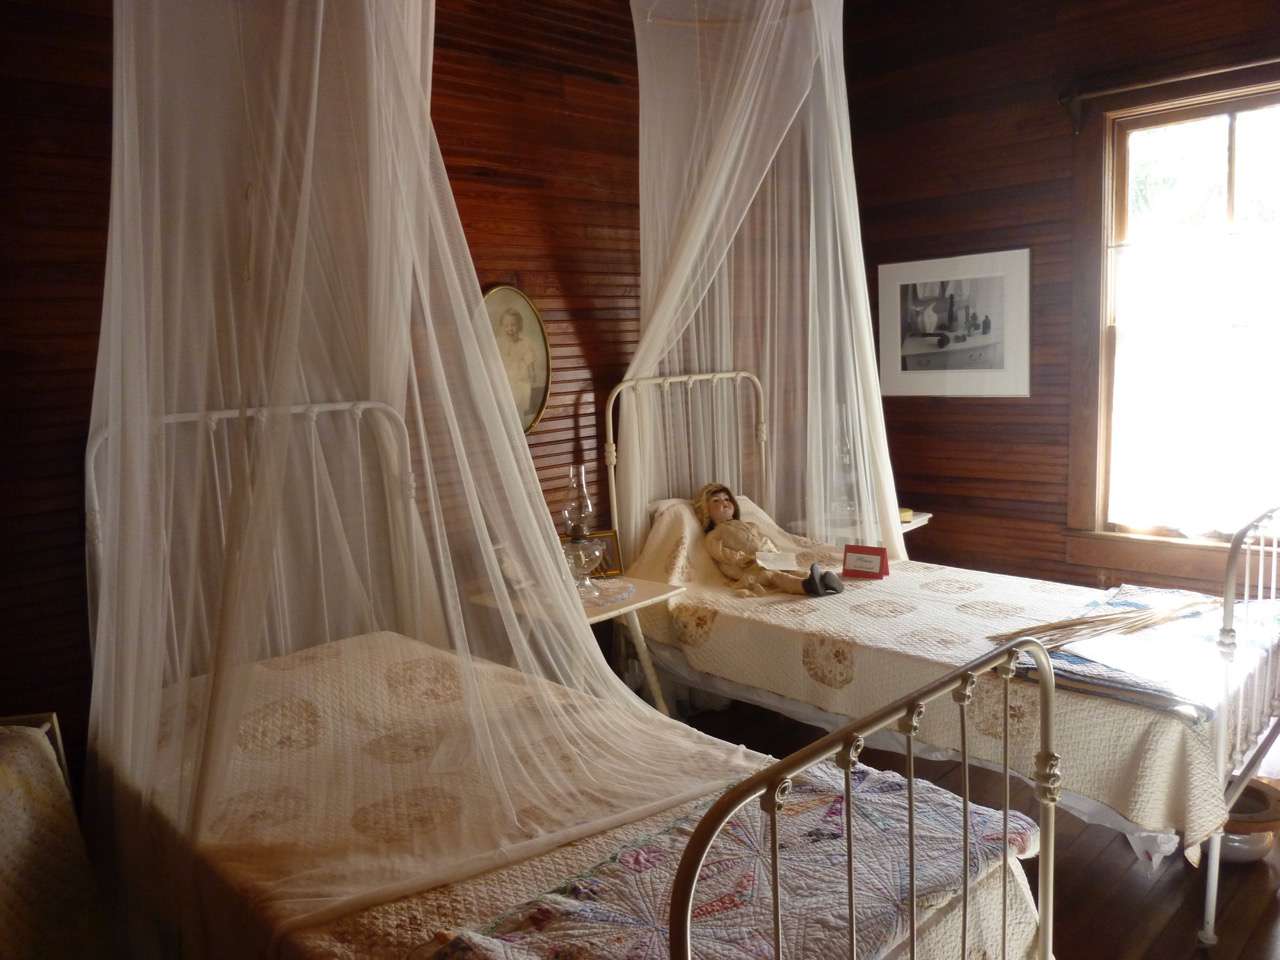 一个镶木板的房间和两个小床,两个网罩